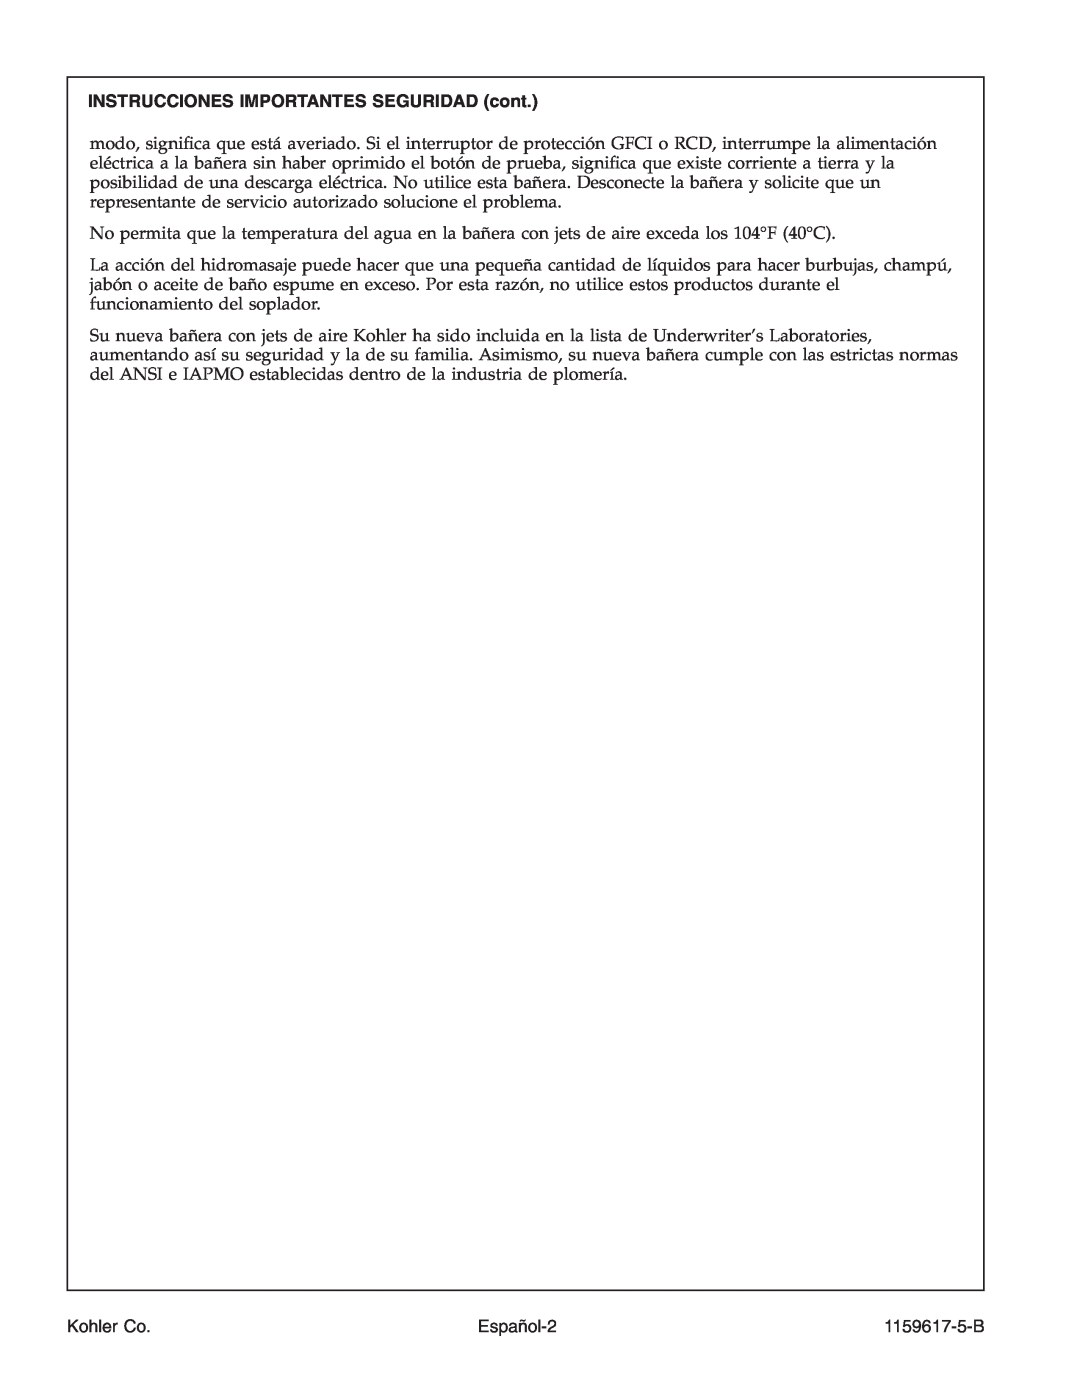 Kohler K-1969 manual INSTRUCCIONES IMPORTANTES SEGURIDAD cont, Español-2, Kohler Co, 1159617-5-B 